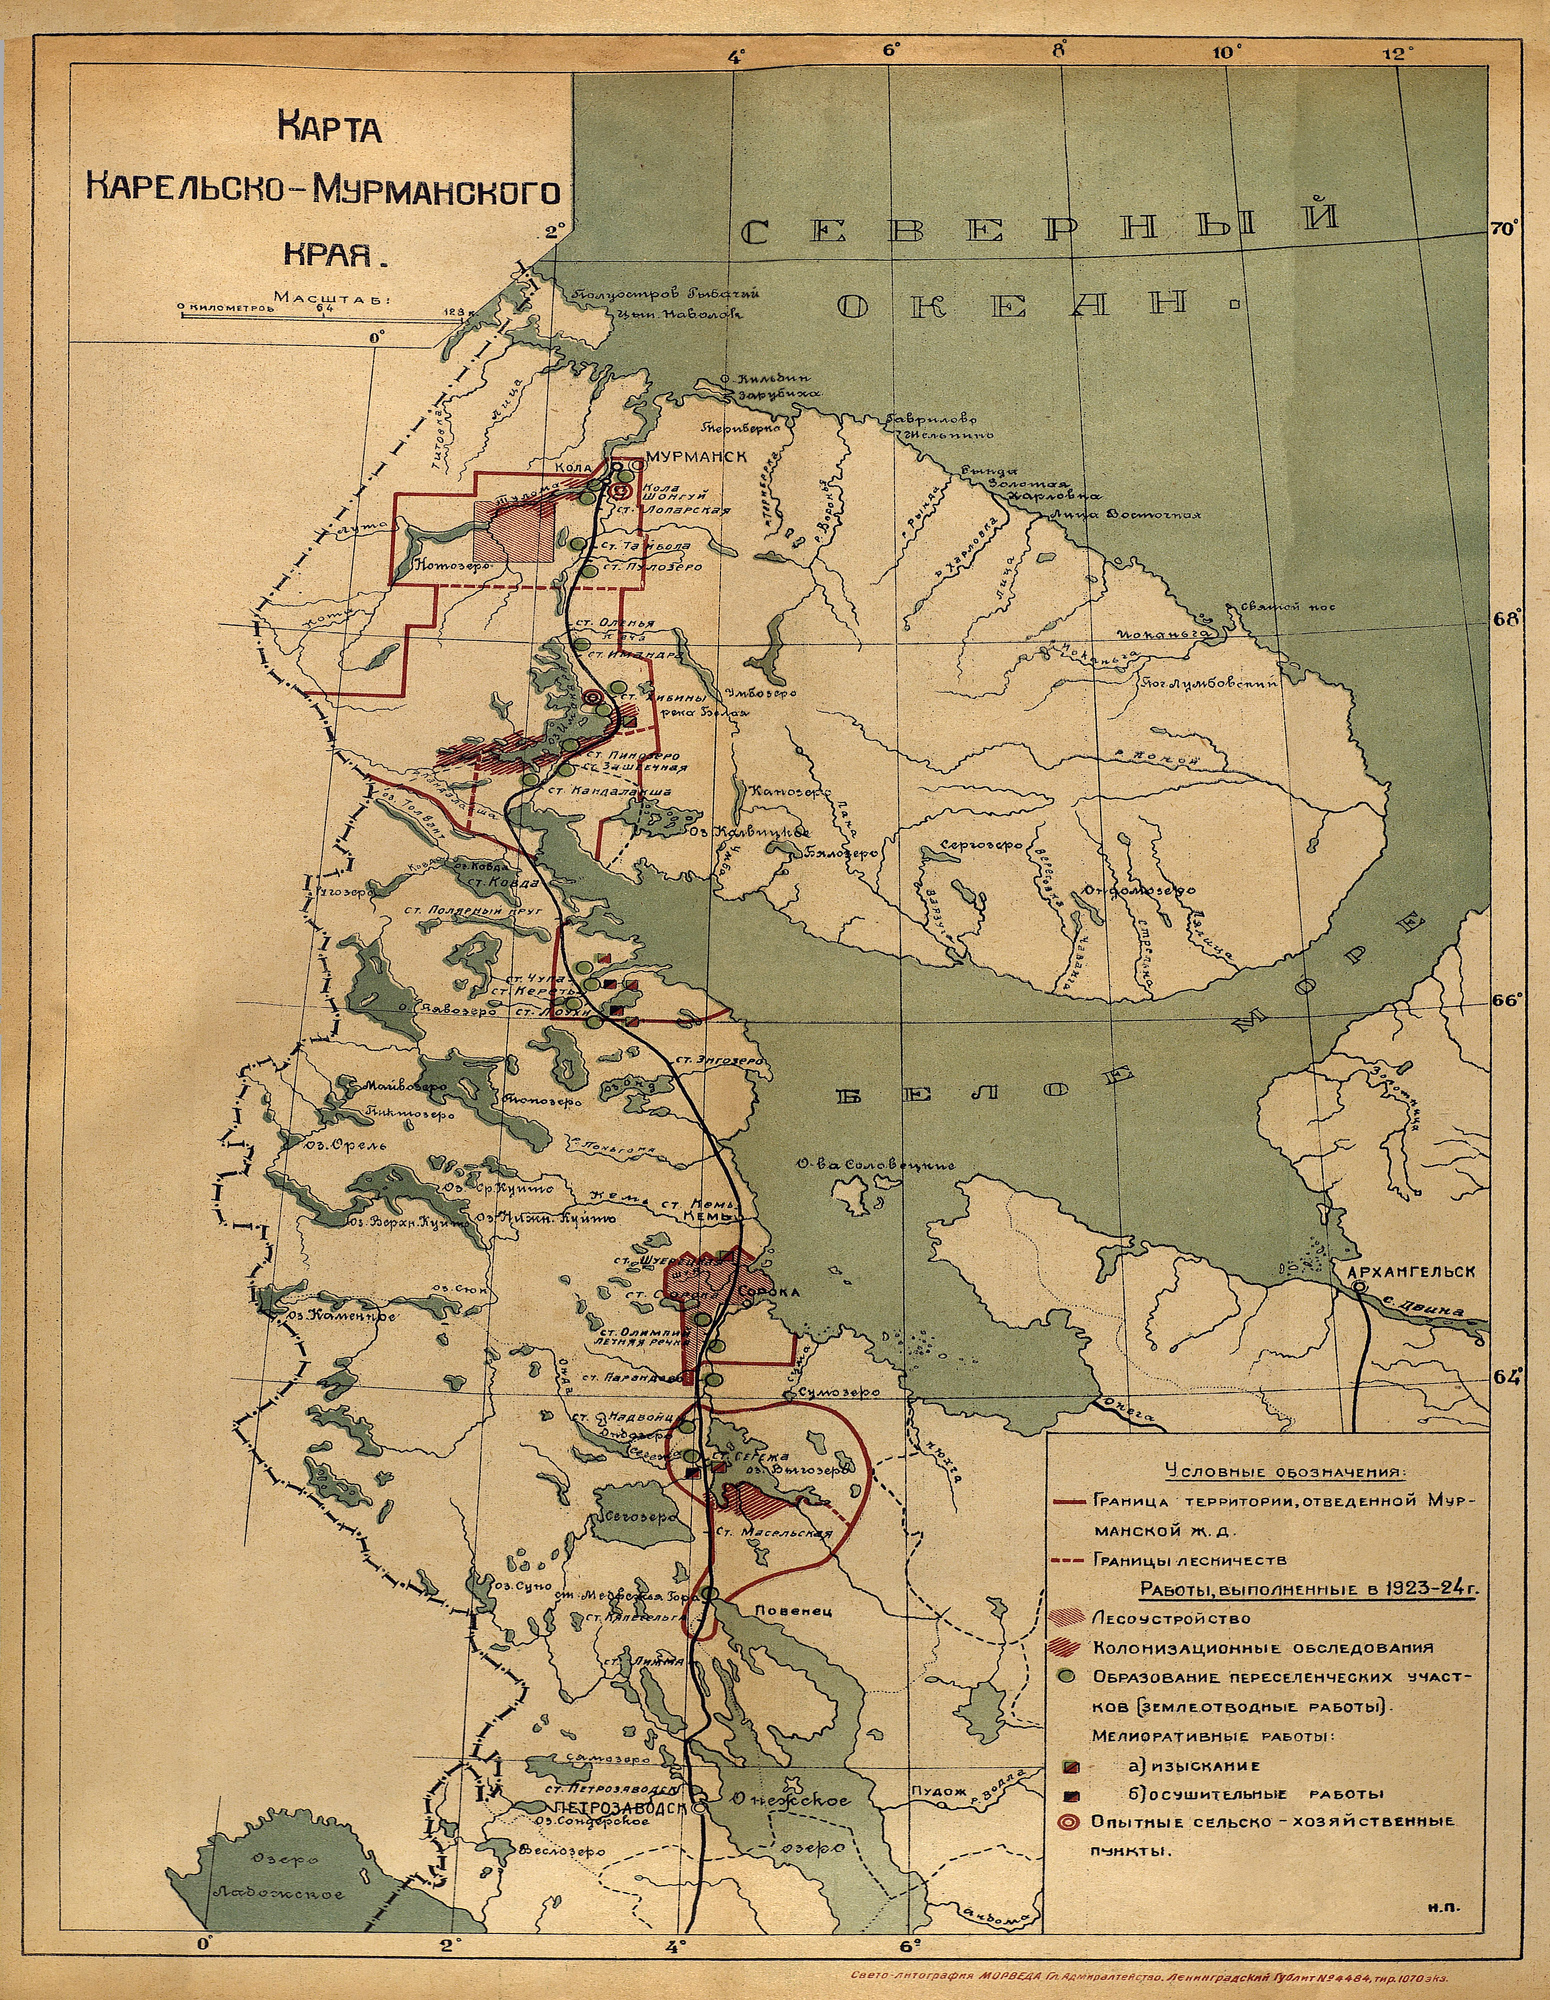 1925. Map of Karelian-Murmansk Region